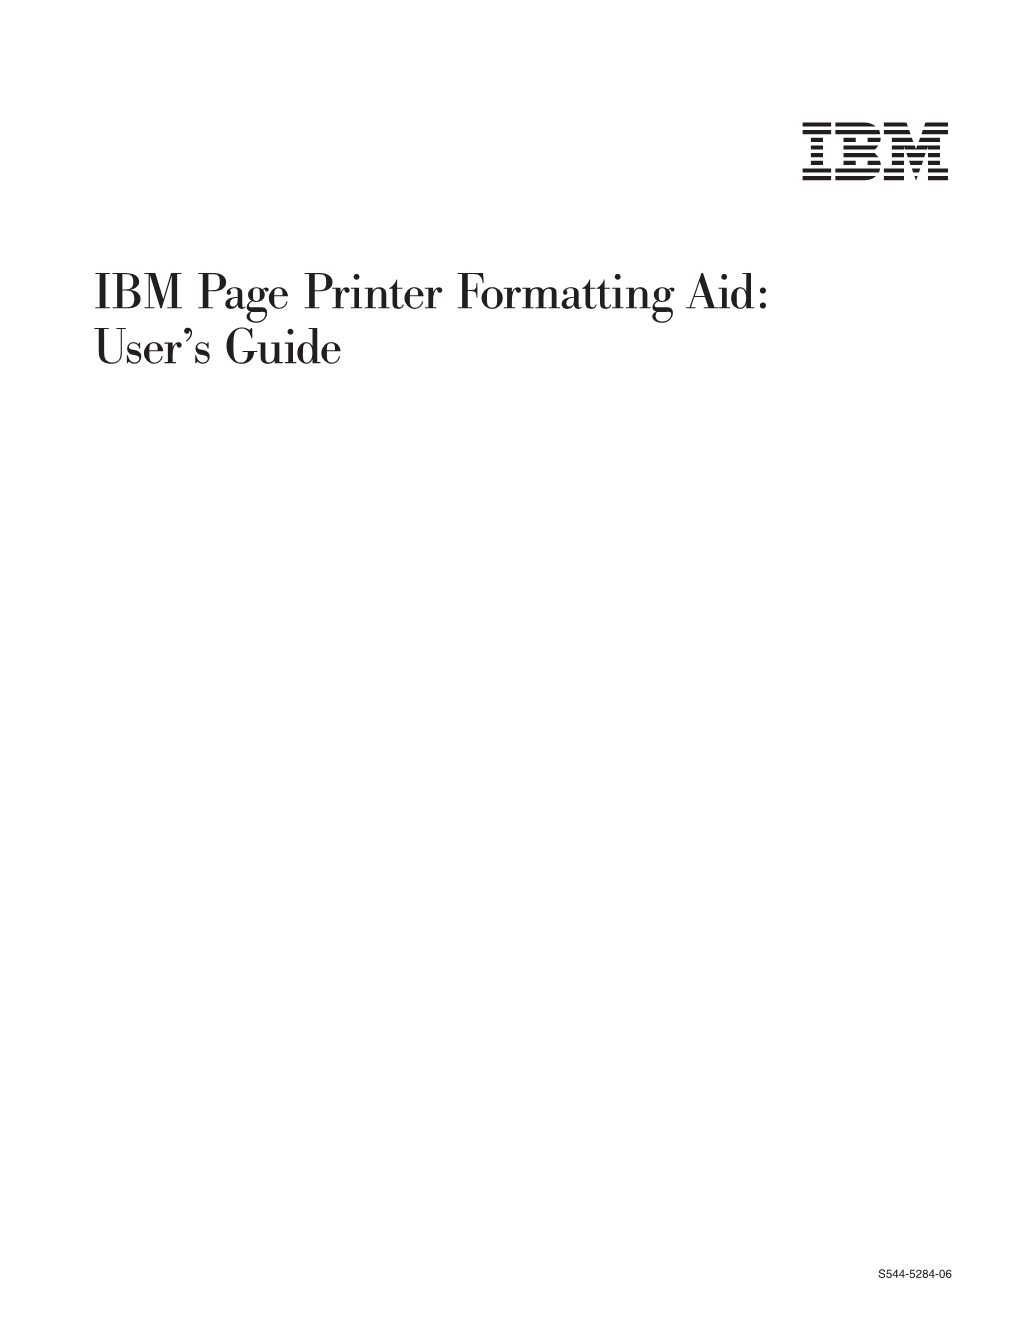 IBM Page Printer Formatting Aid PPF Users Guide